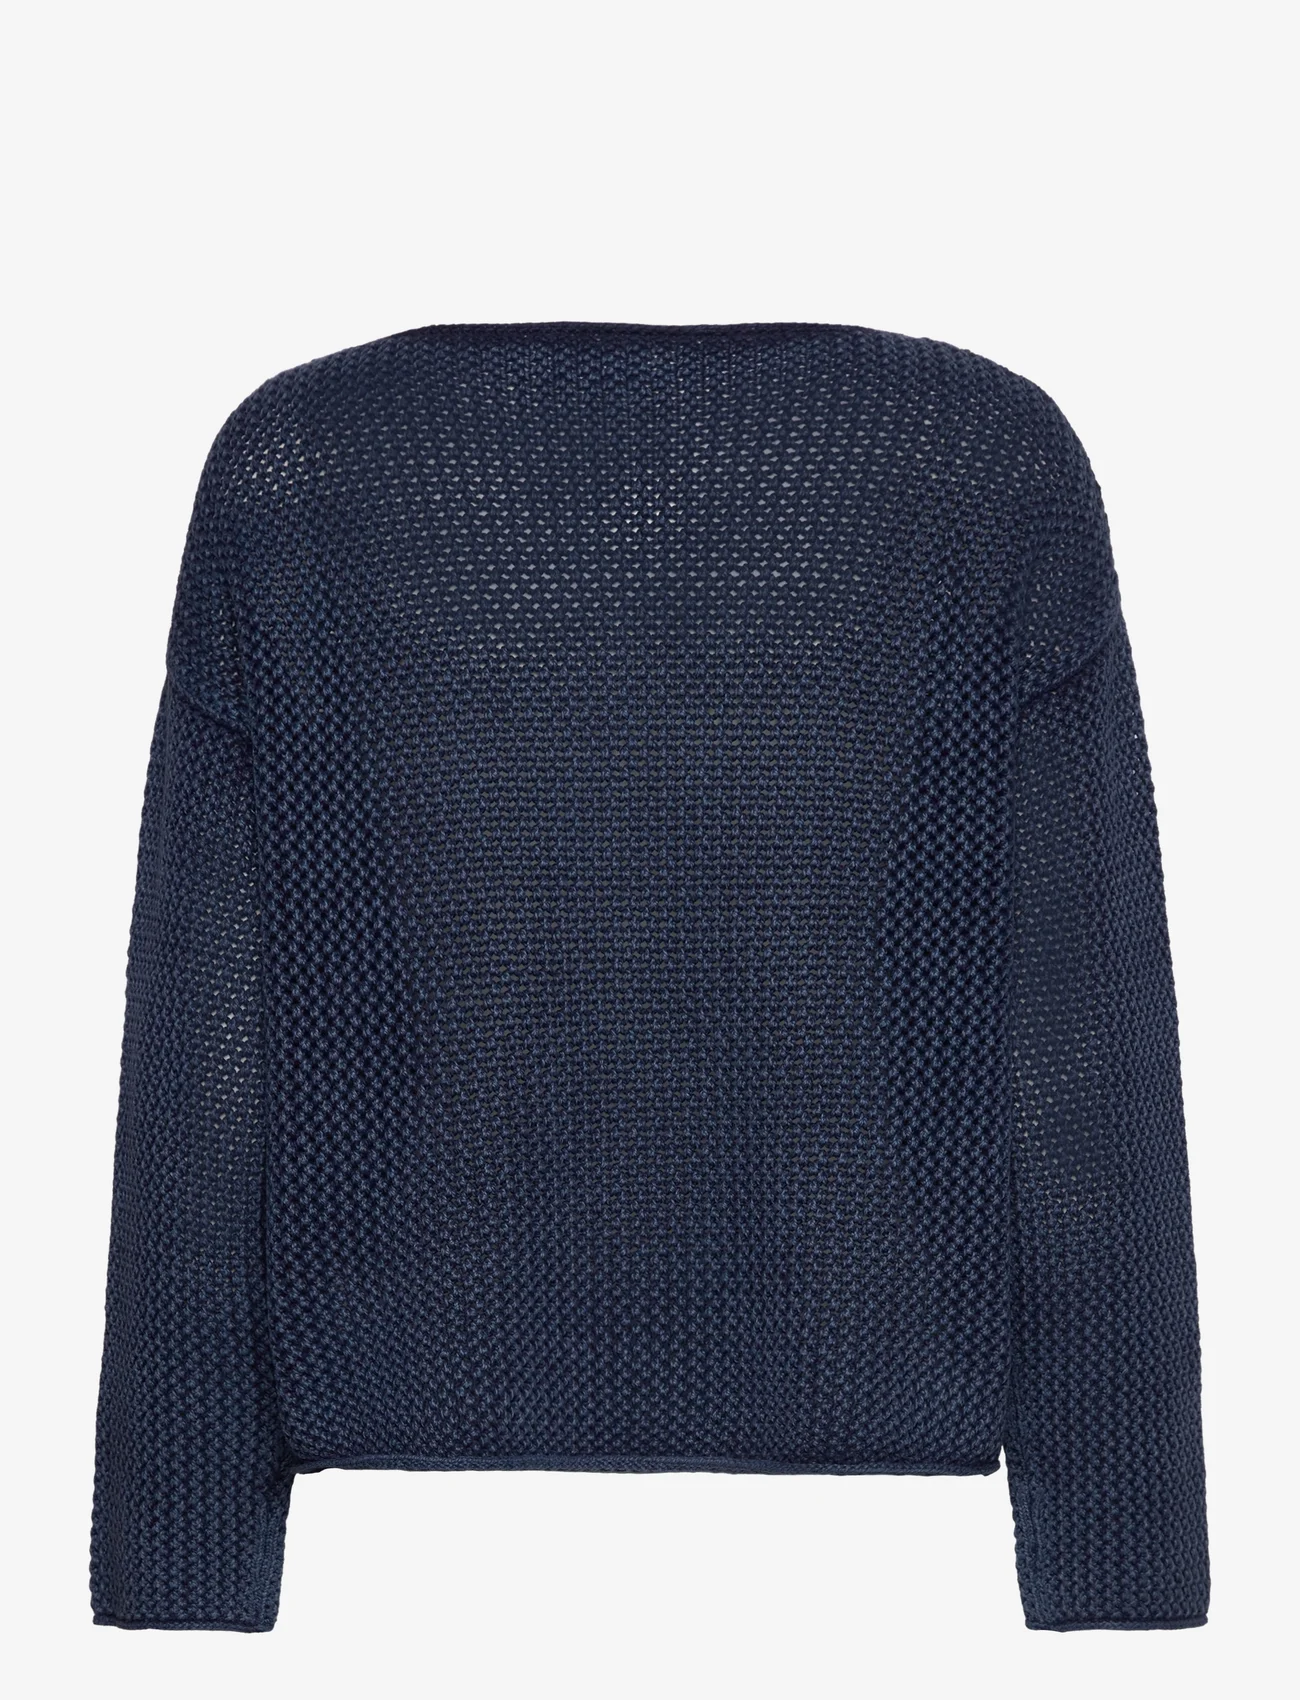 Polo Ralph Lauren - Flag Pointelle Cotton-Linen Sweater - neulepuserot - blue multi - 1